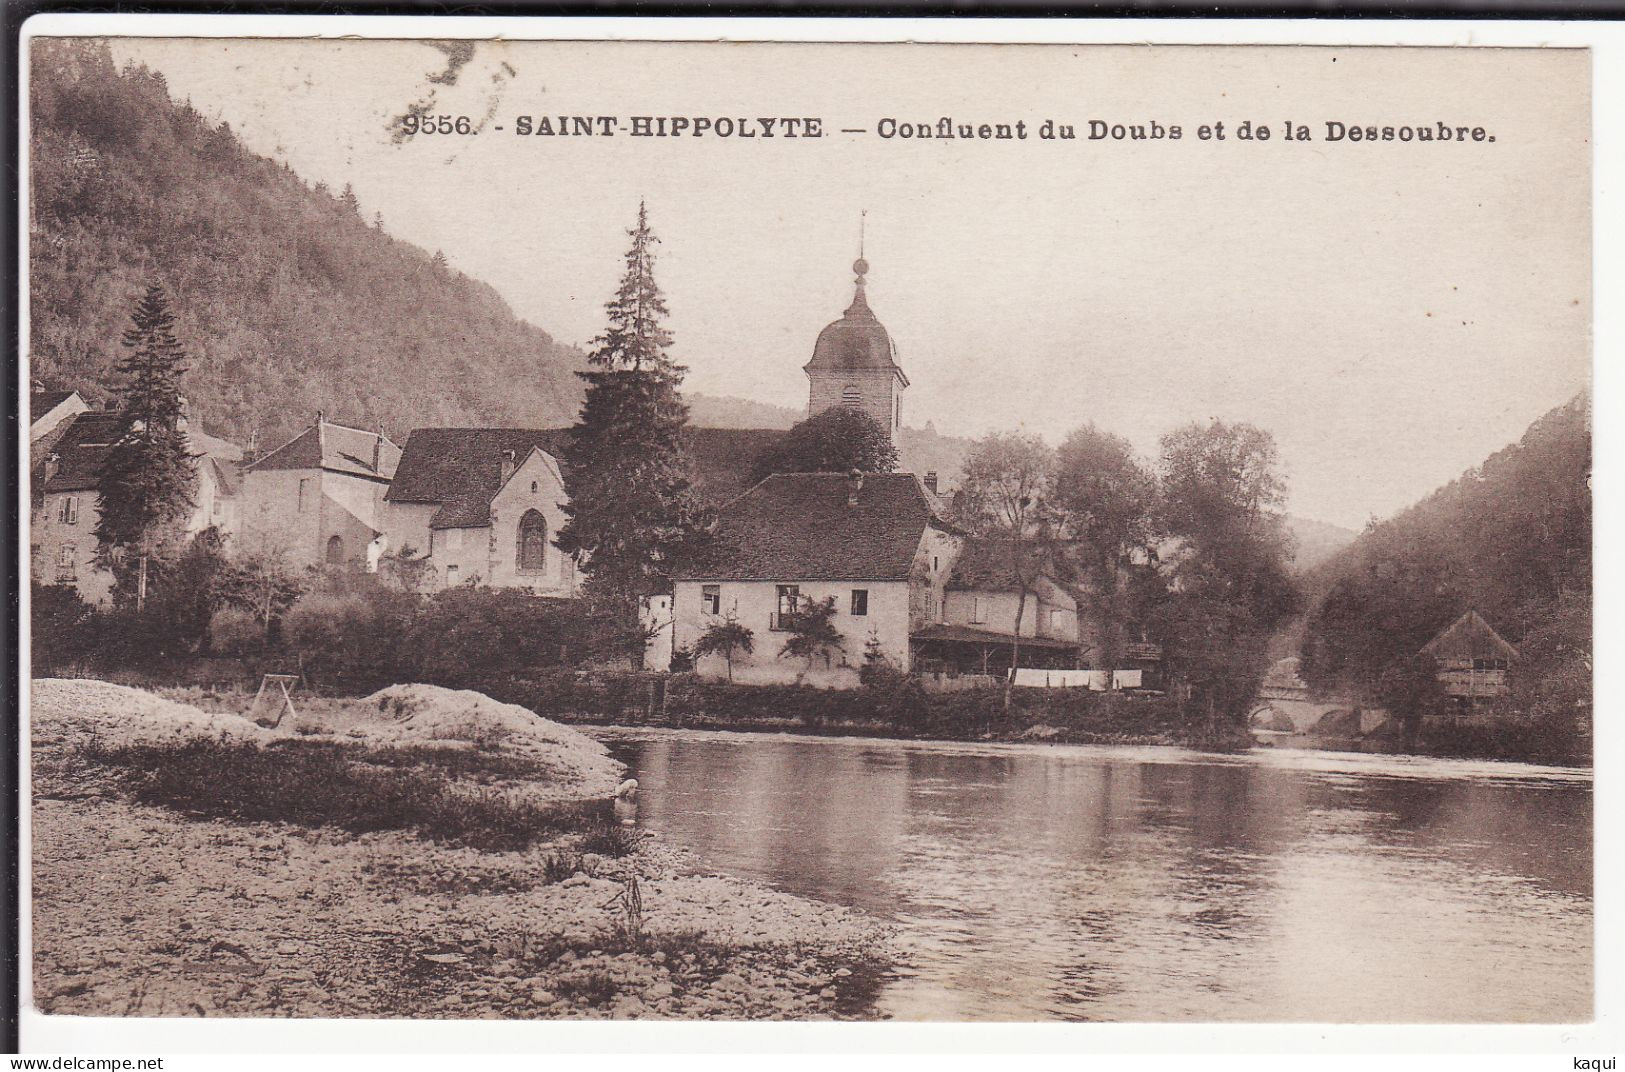 DOUBS - SAINT-HIPPOLYTE - Confluent Du Doubs Et De La Dessoubre - Les Editions C. L. B. - N° 9556 - Saint Hippolyte